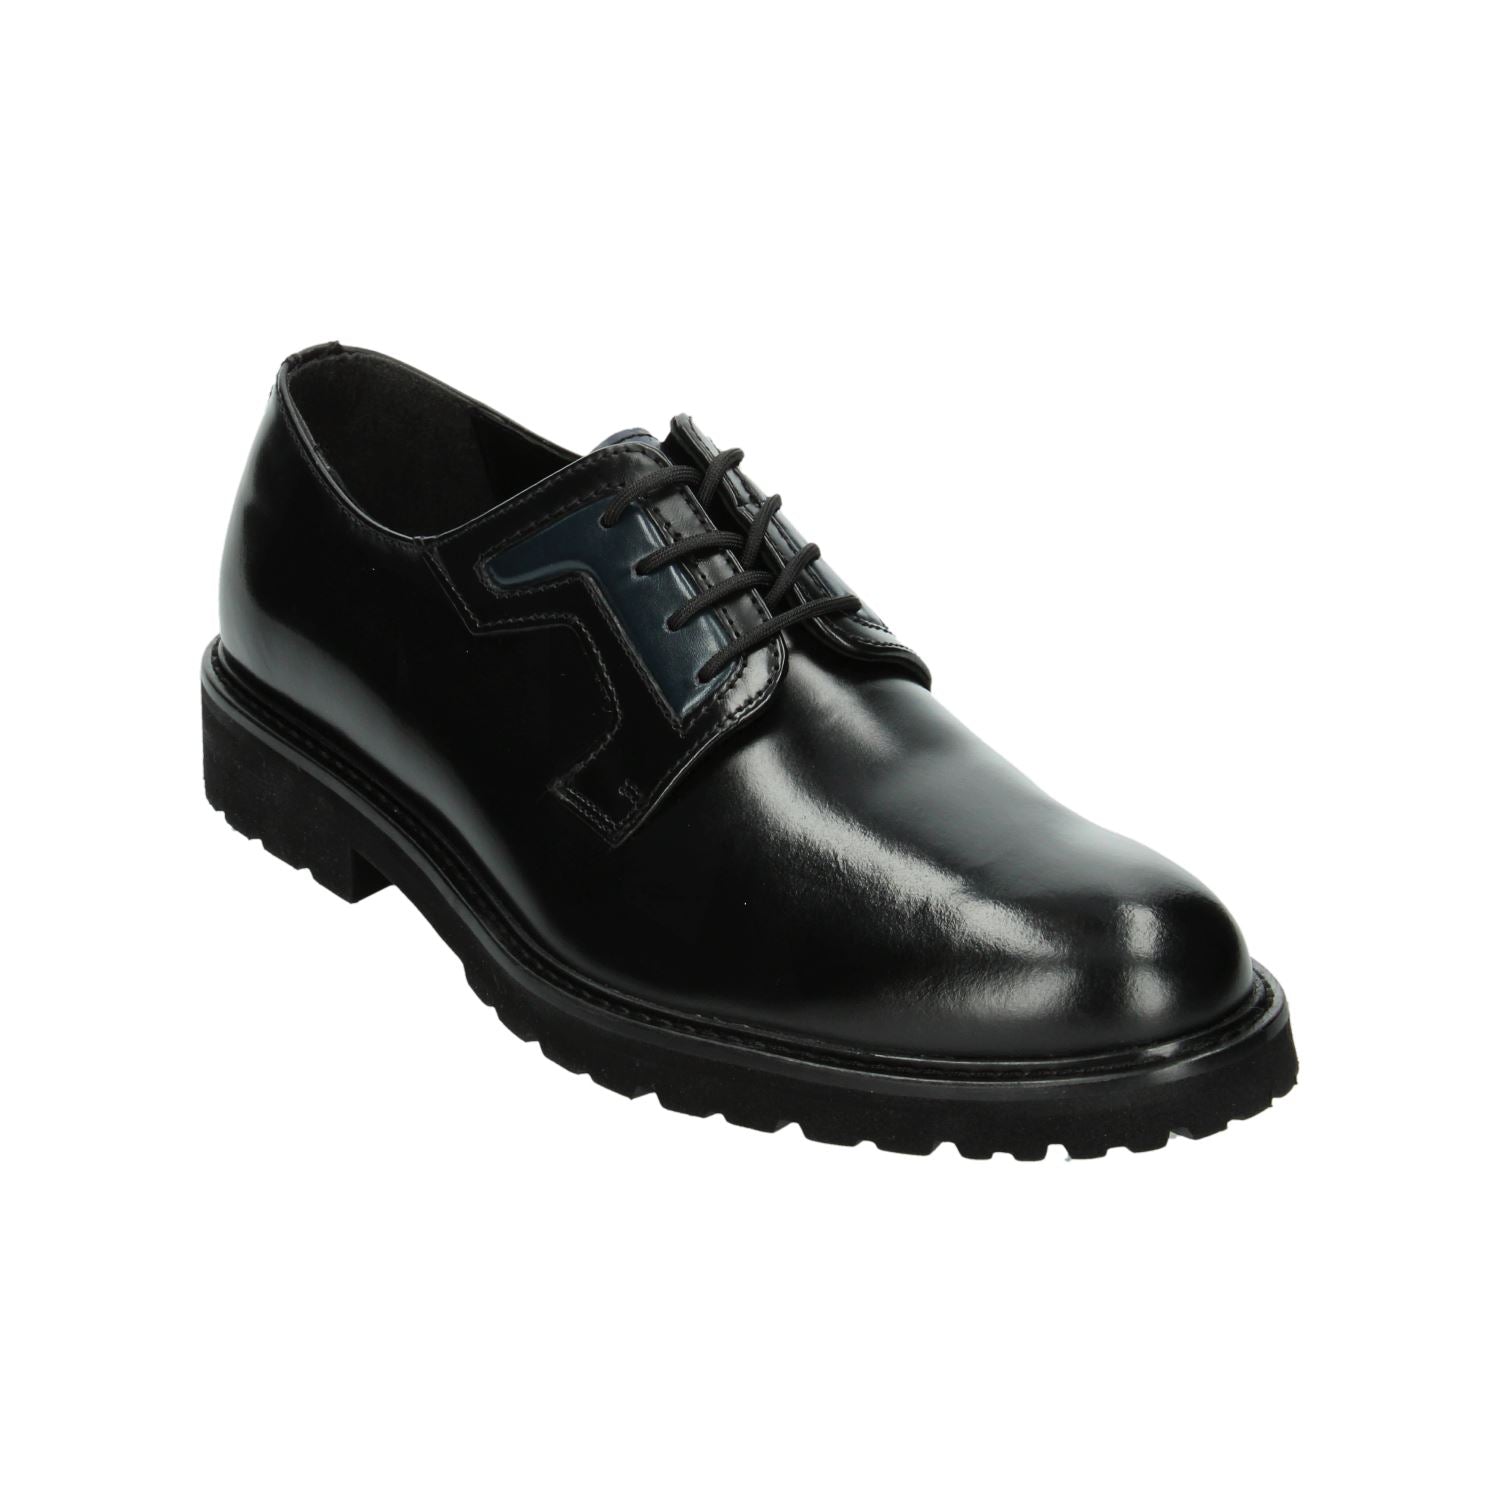 Zapato de Vestir Gino cherruti para Hombre 5005 Negro [GCH324] División_Calzado GINO CHERRUTI 